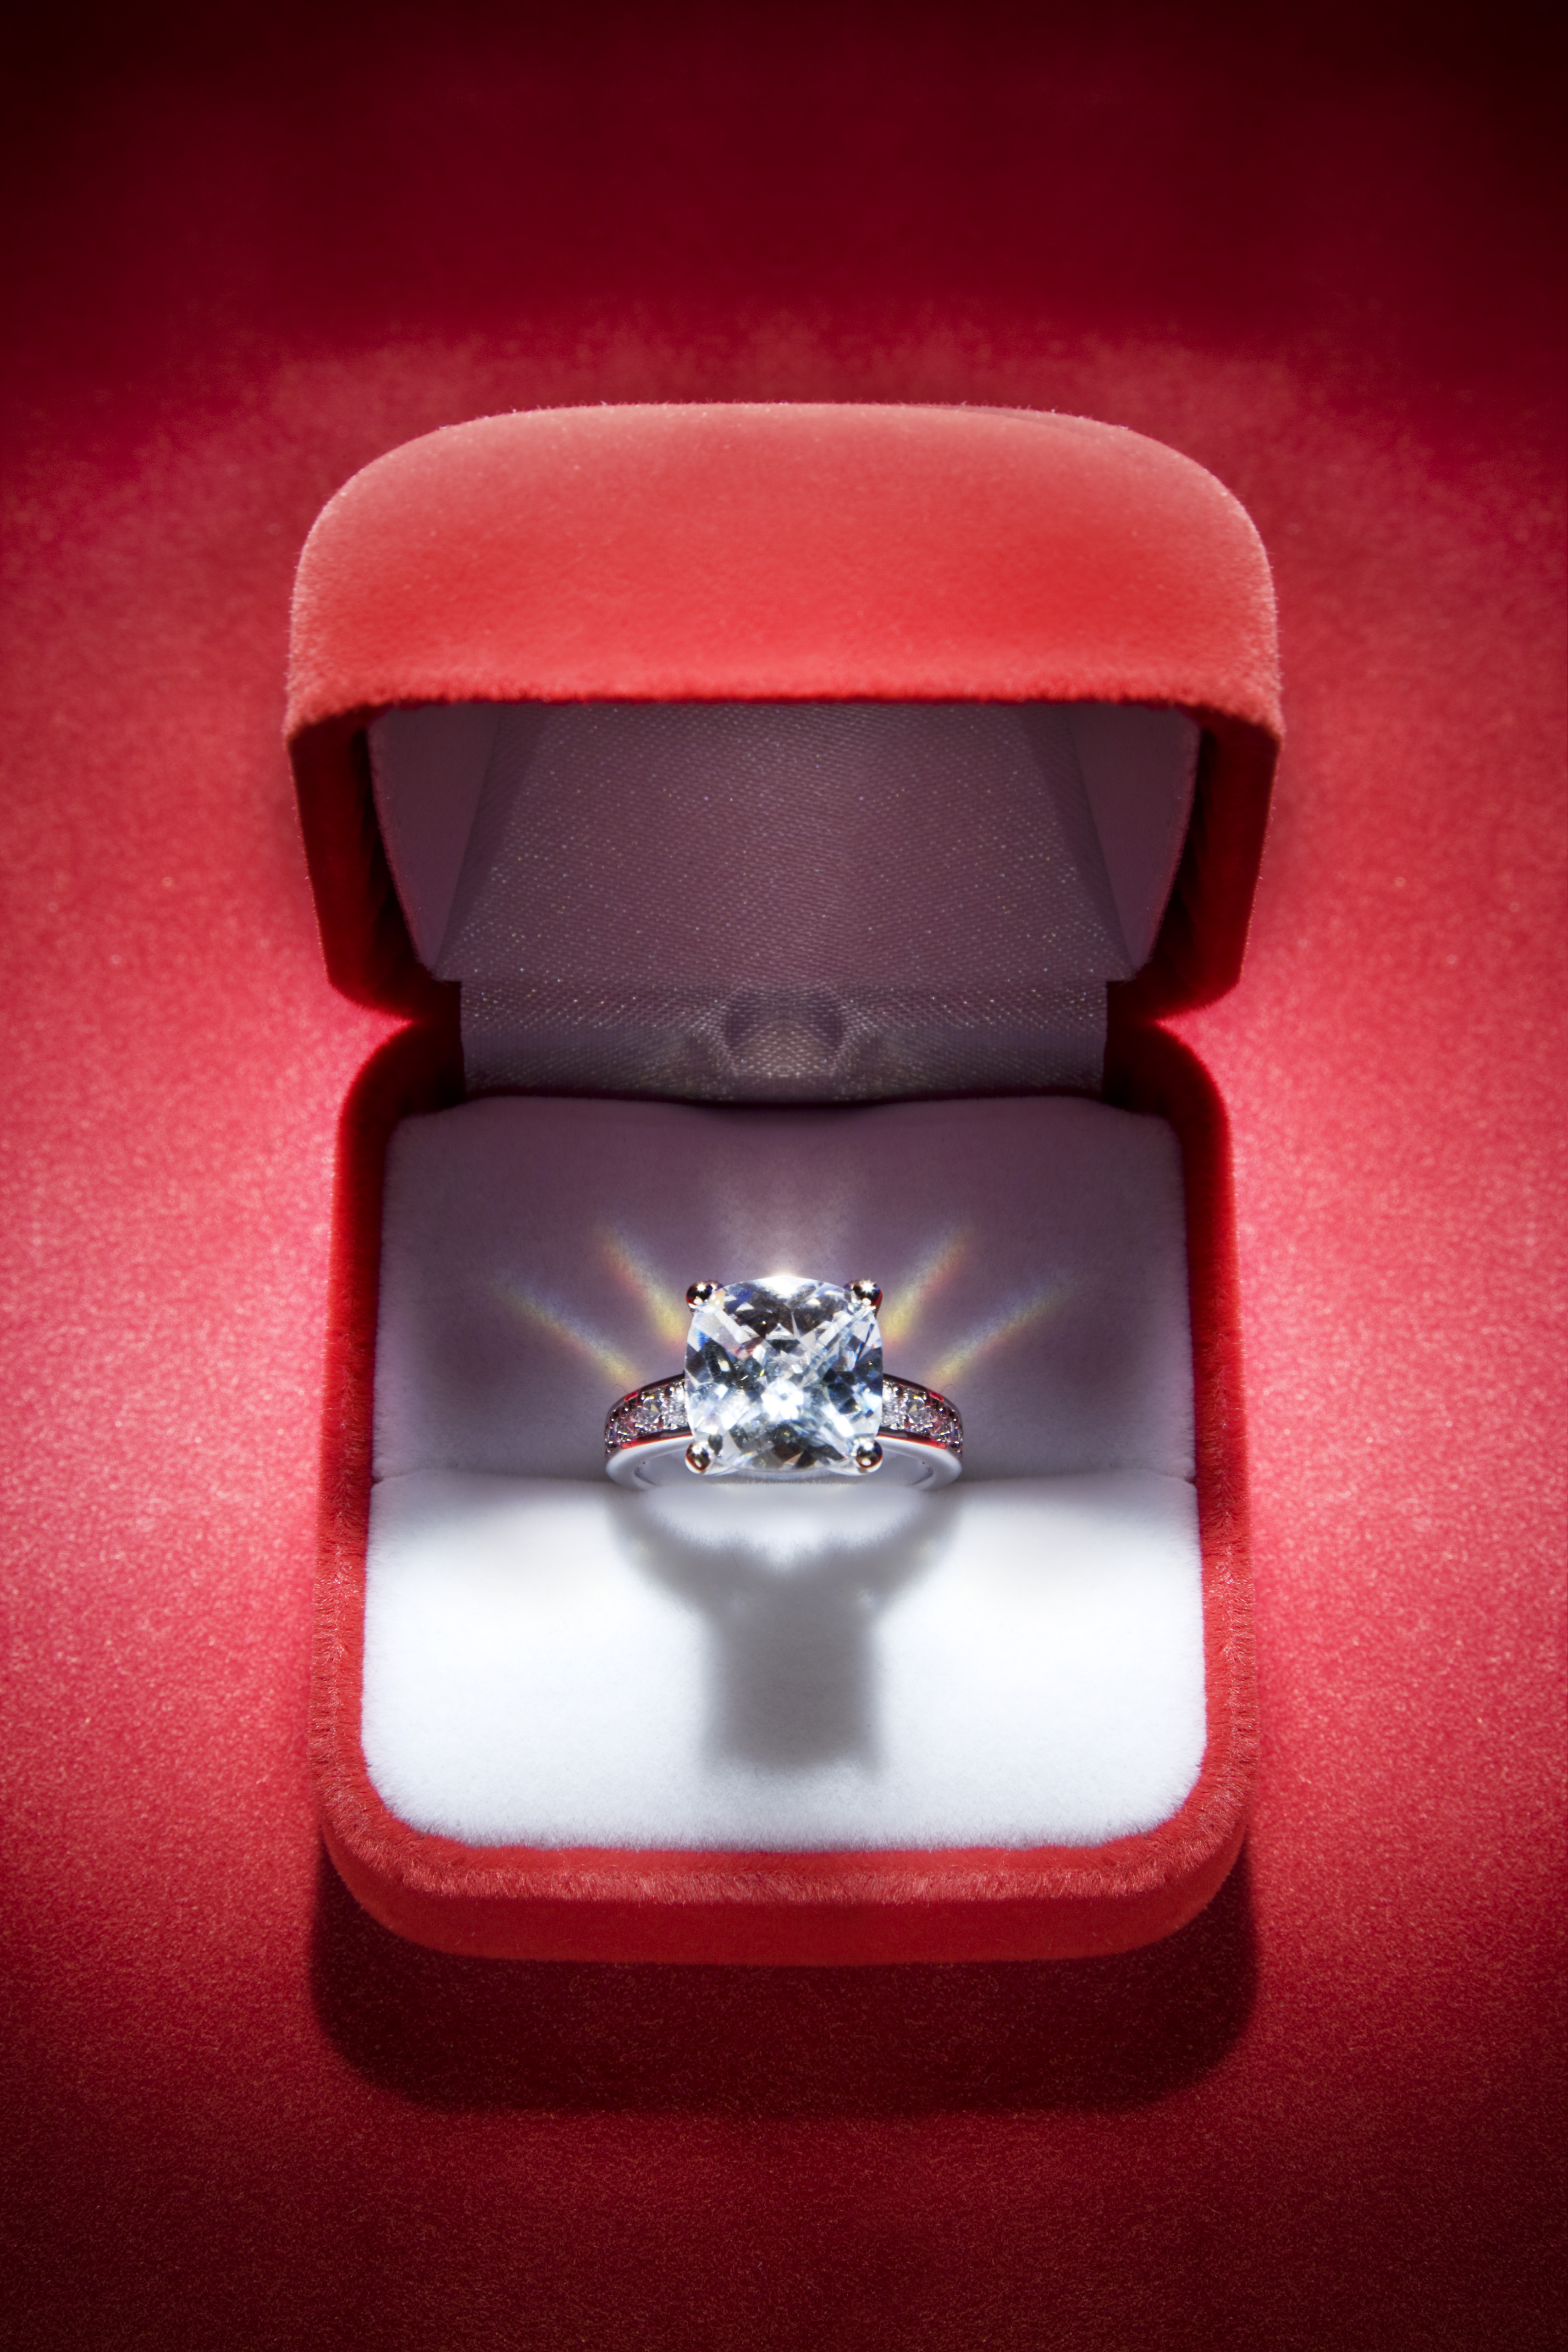 Diamond ring in red velvet box (Tooga&mdash;Getty Images)